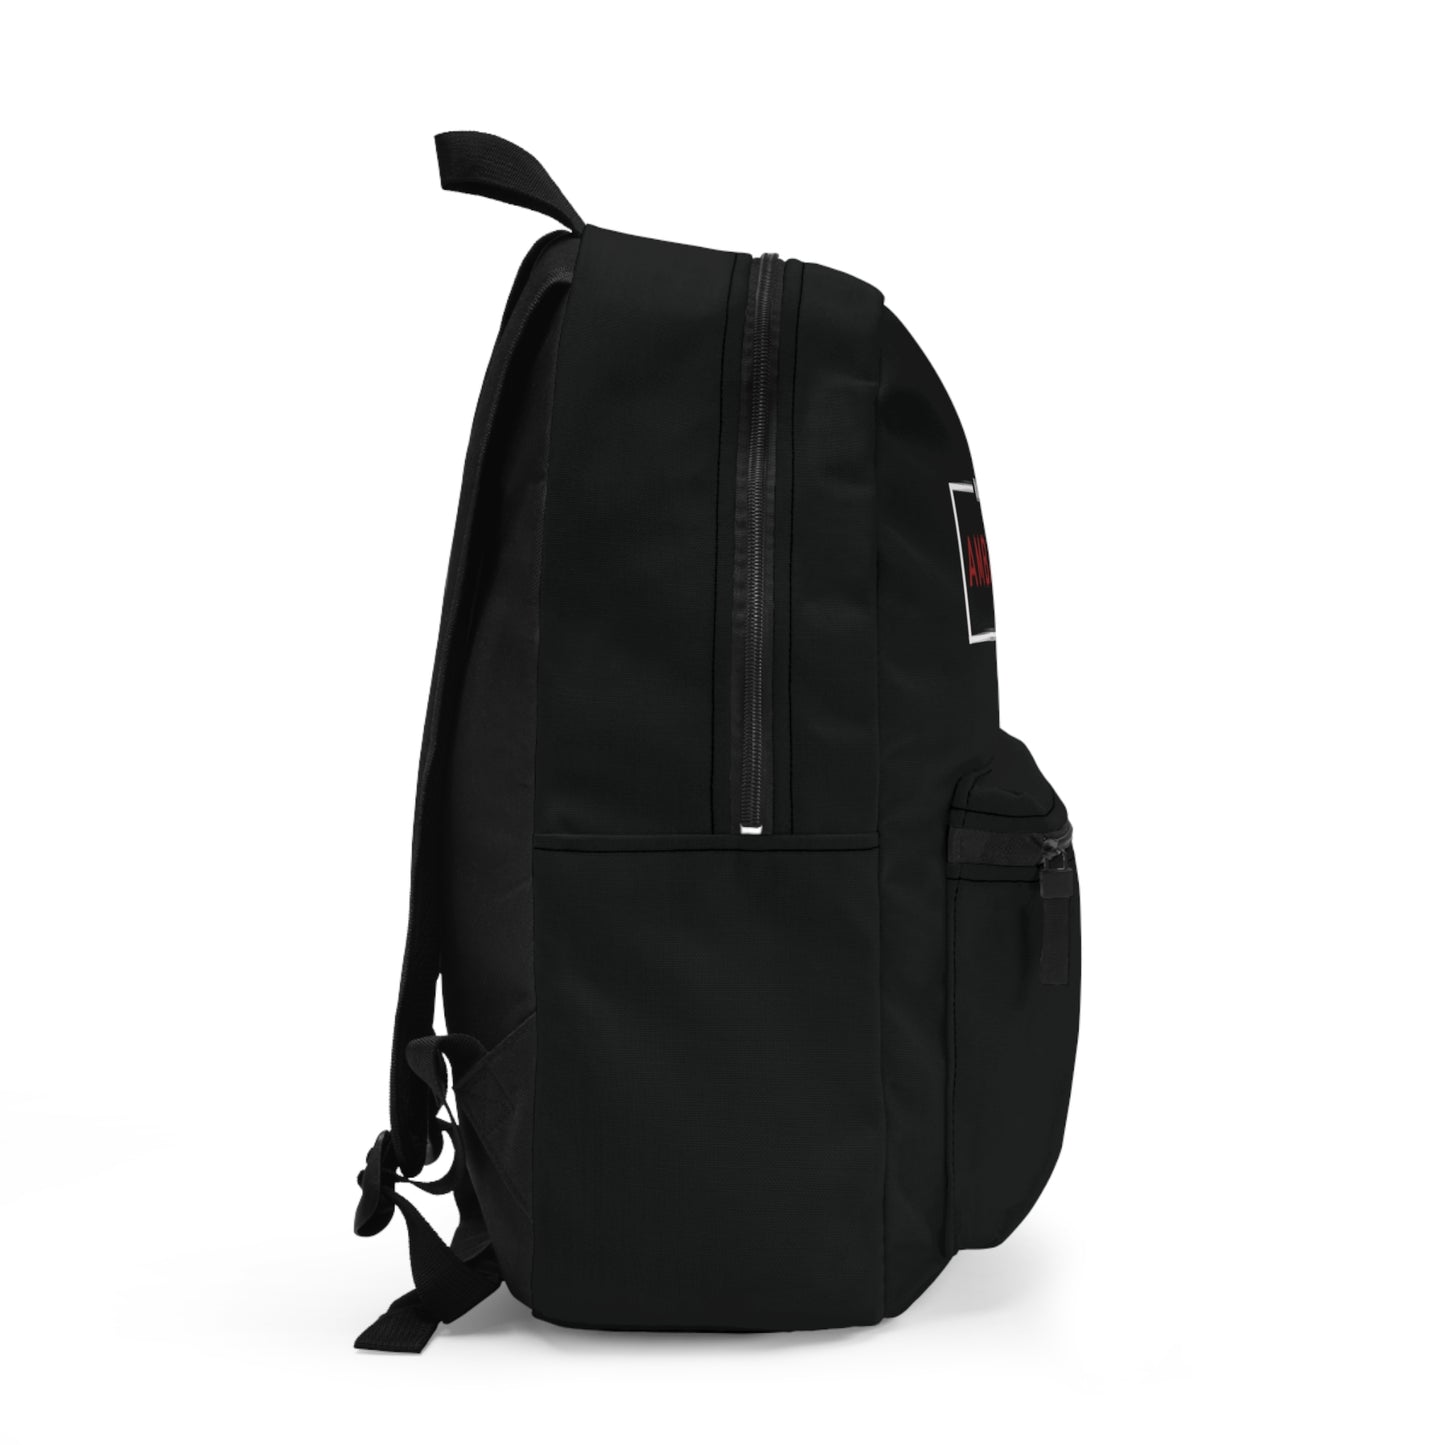 “Ambassador” Backpack